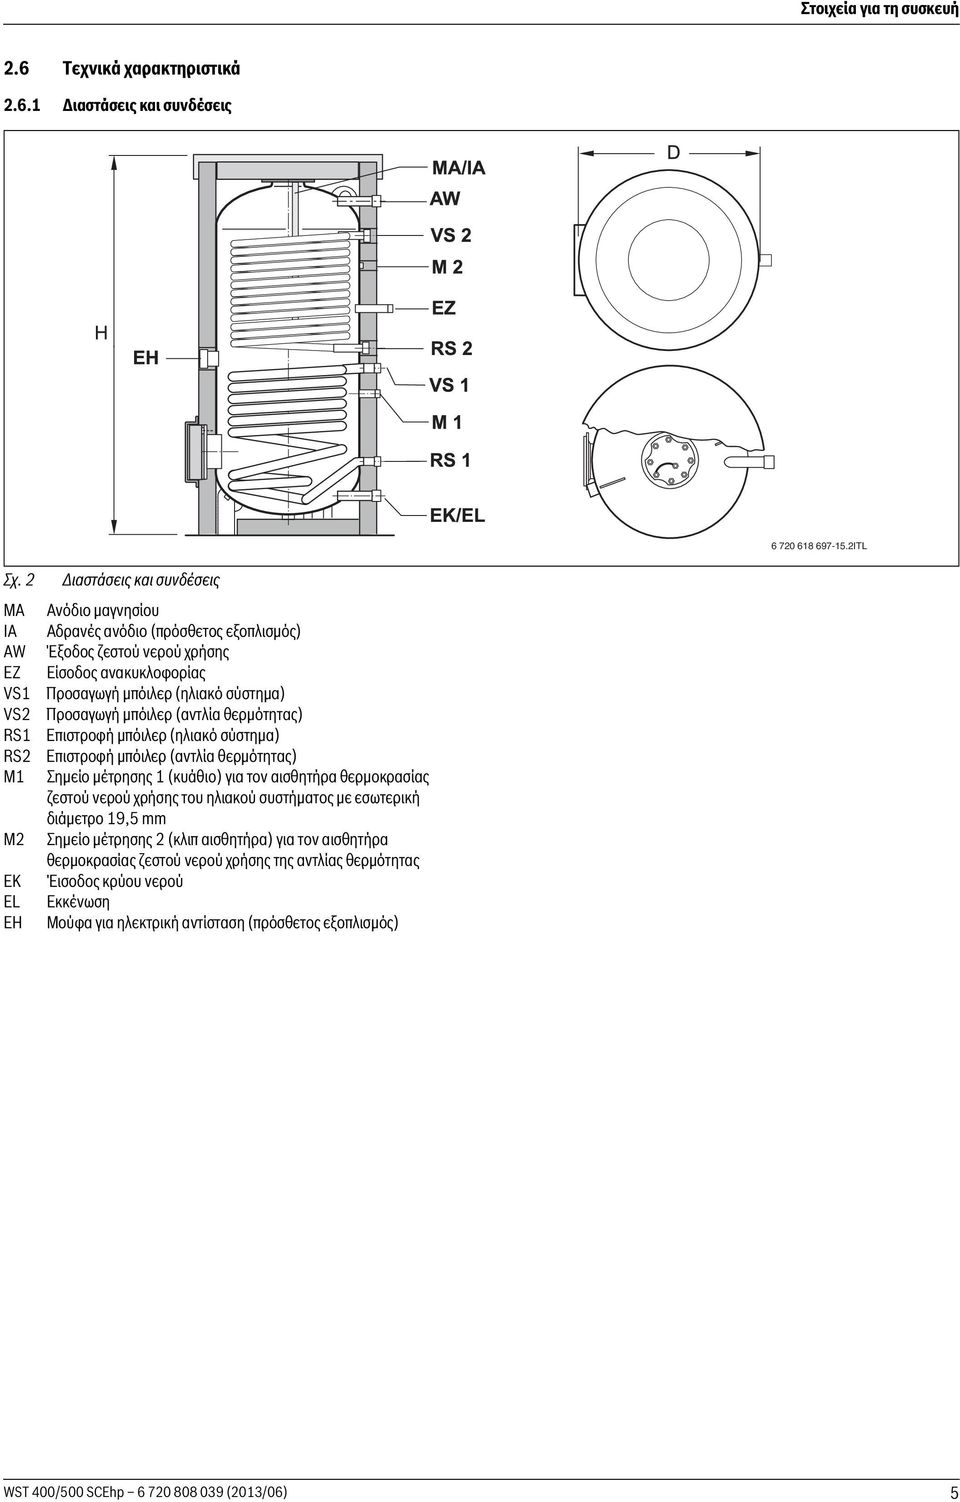 (ηλιακό σύστημα) Προσαγωγή μπόιλερ (αντλία θερμότητας) Επιστροφή μπόιλερ (ηλιακό σύστημα) Επιστροφή μπόιλερ (αντλία θερμότητας) Σημείο μέτρησης 1 (κυάθιο) για τον αισθητήρα θερμοκρασίας ζεστού νερού